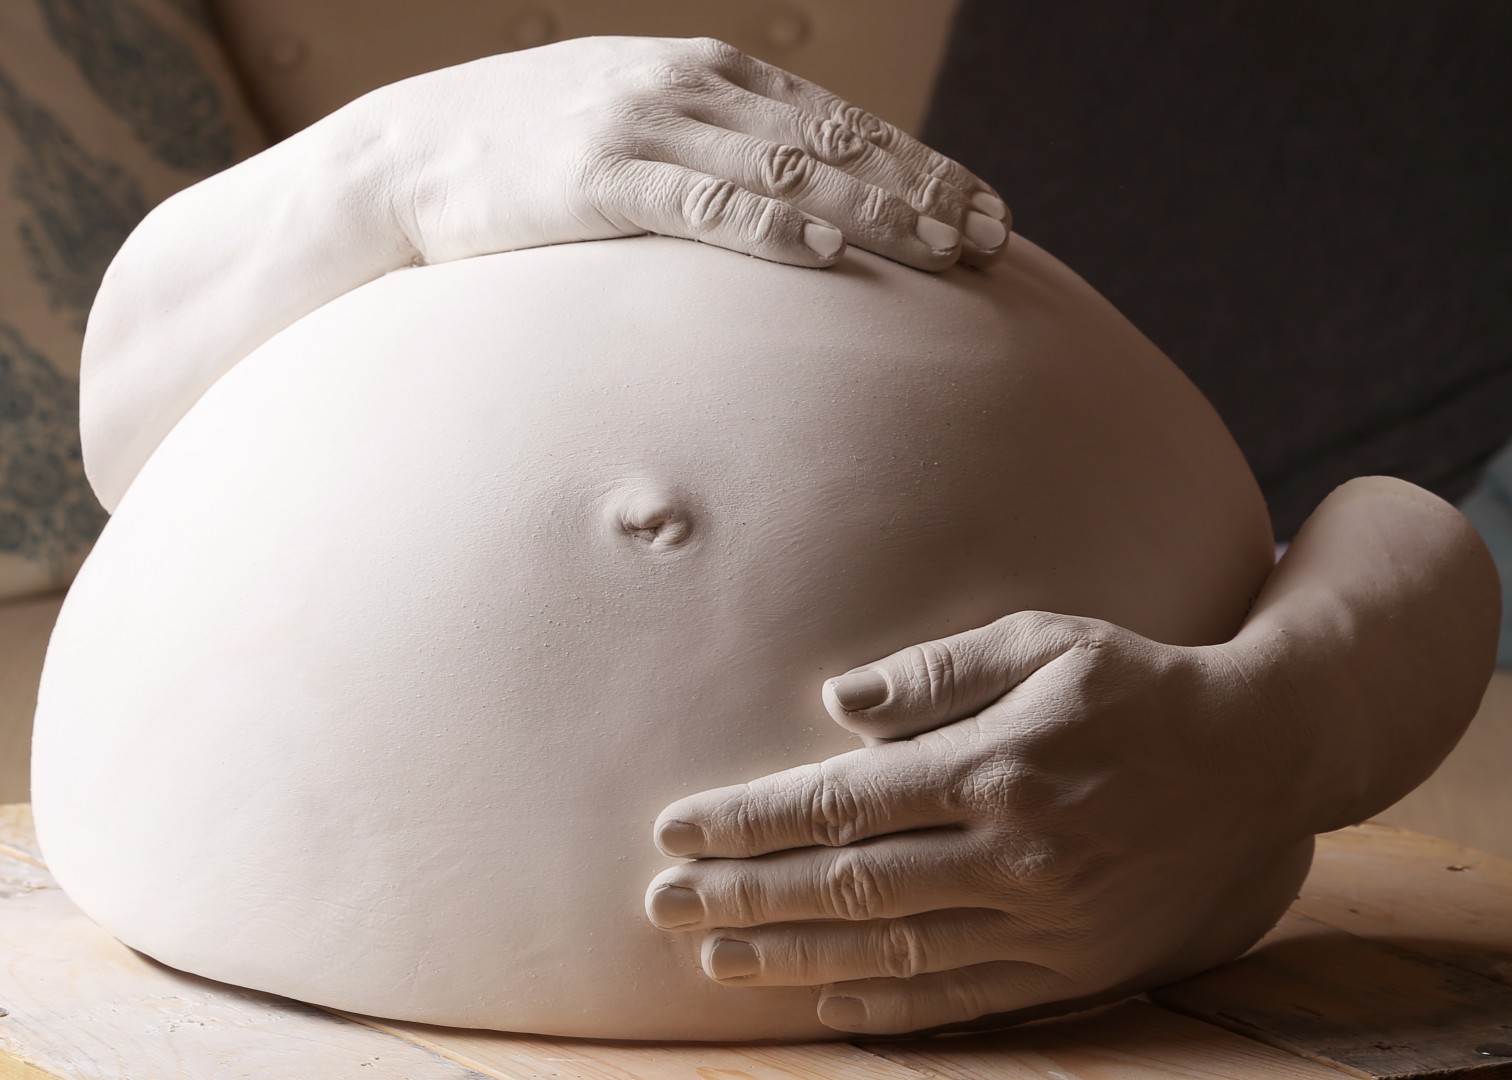 moulage de ventre femme enceinte en plâtre blanc avec mains